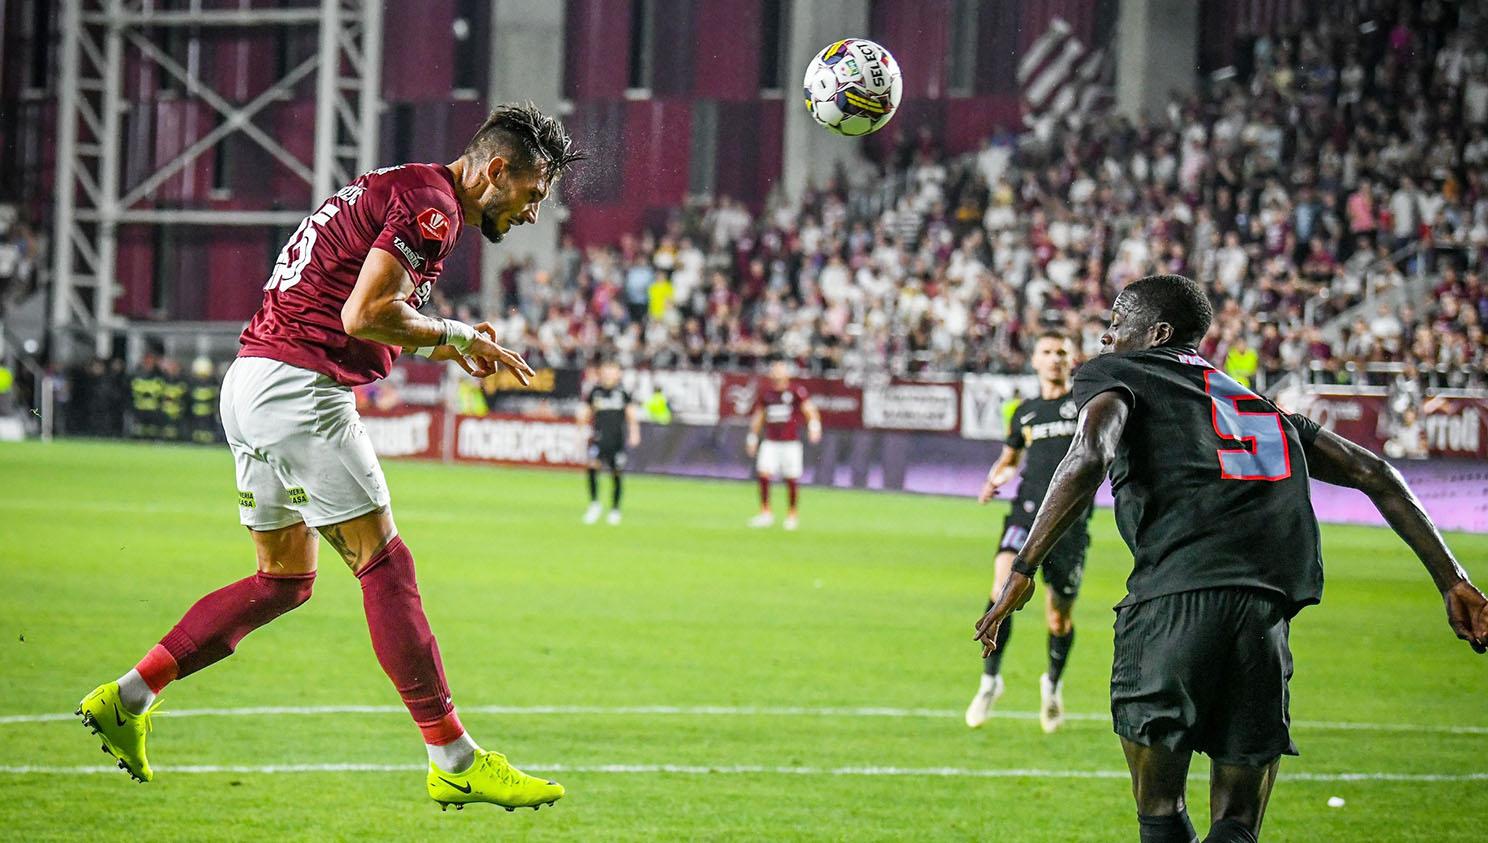 Marko Dugandzic a deschis scorul în meciul Rapid – FCSB cu o lovitură de cap la colțul lung, în minutul 19, marcând primul lui gol pentru gruparea alb-vișinie